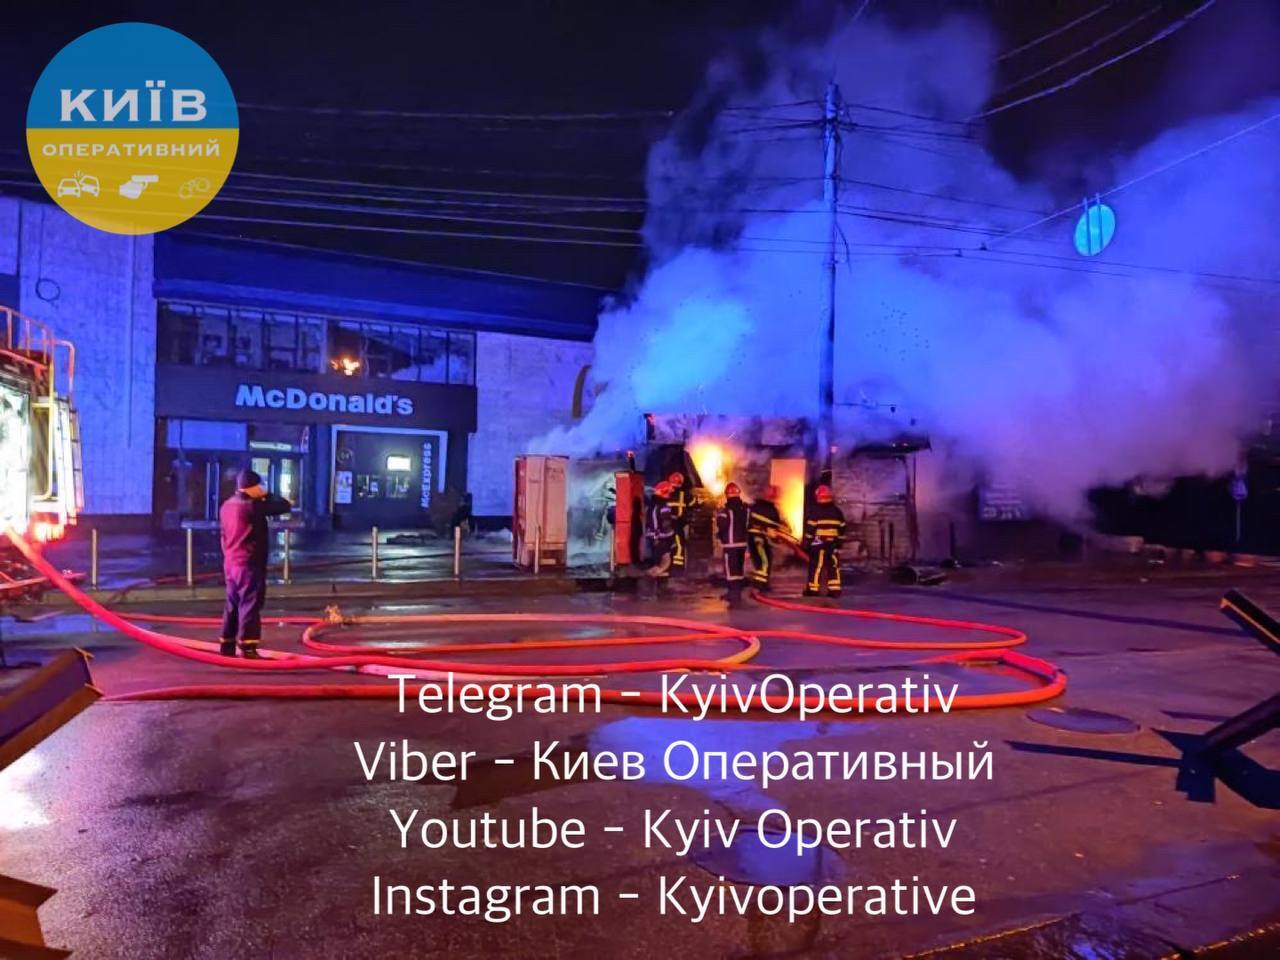 В Киеве на Лукьяновке ночью сгорели два МАФа: очевидцы сообщили о взрыве. Фото